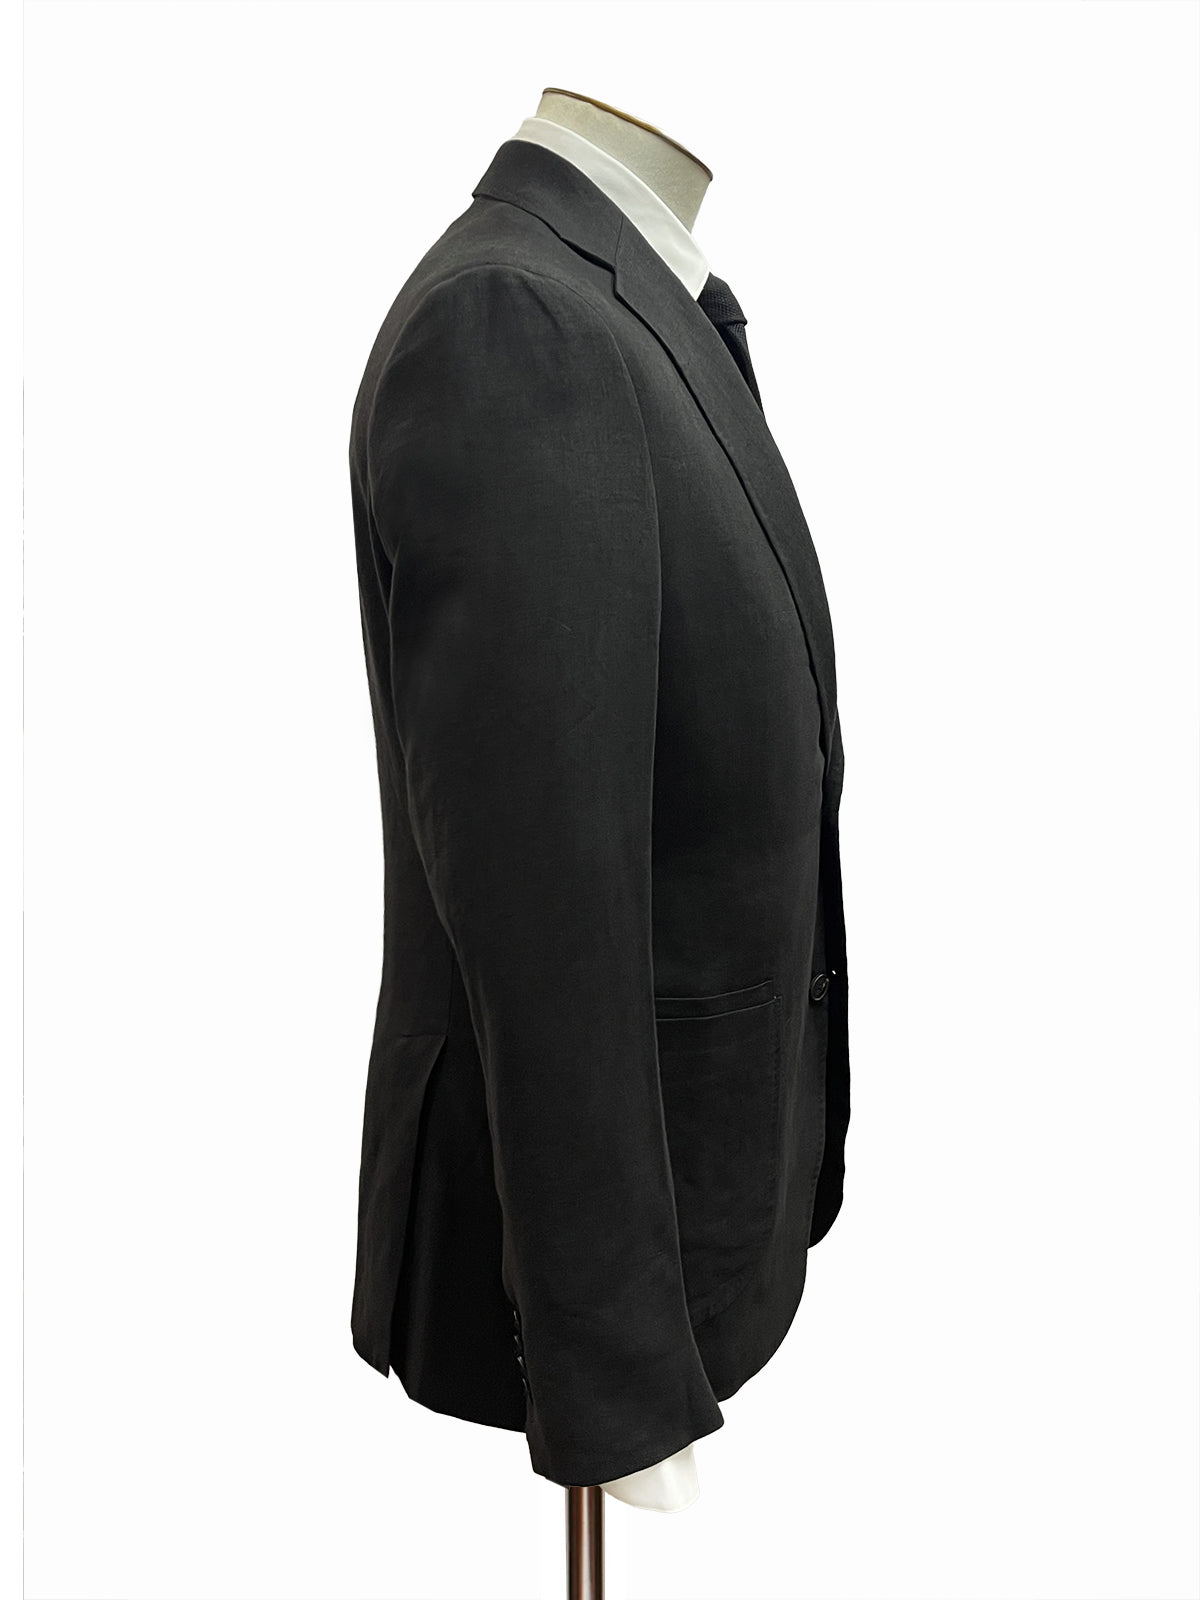 Bayer Linen Suit - Schwarz